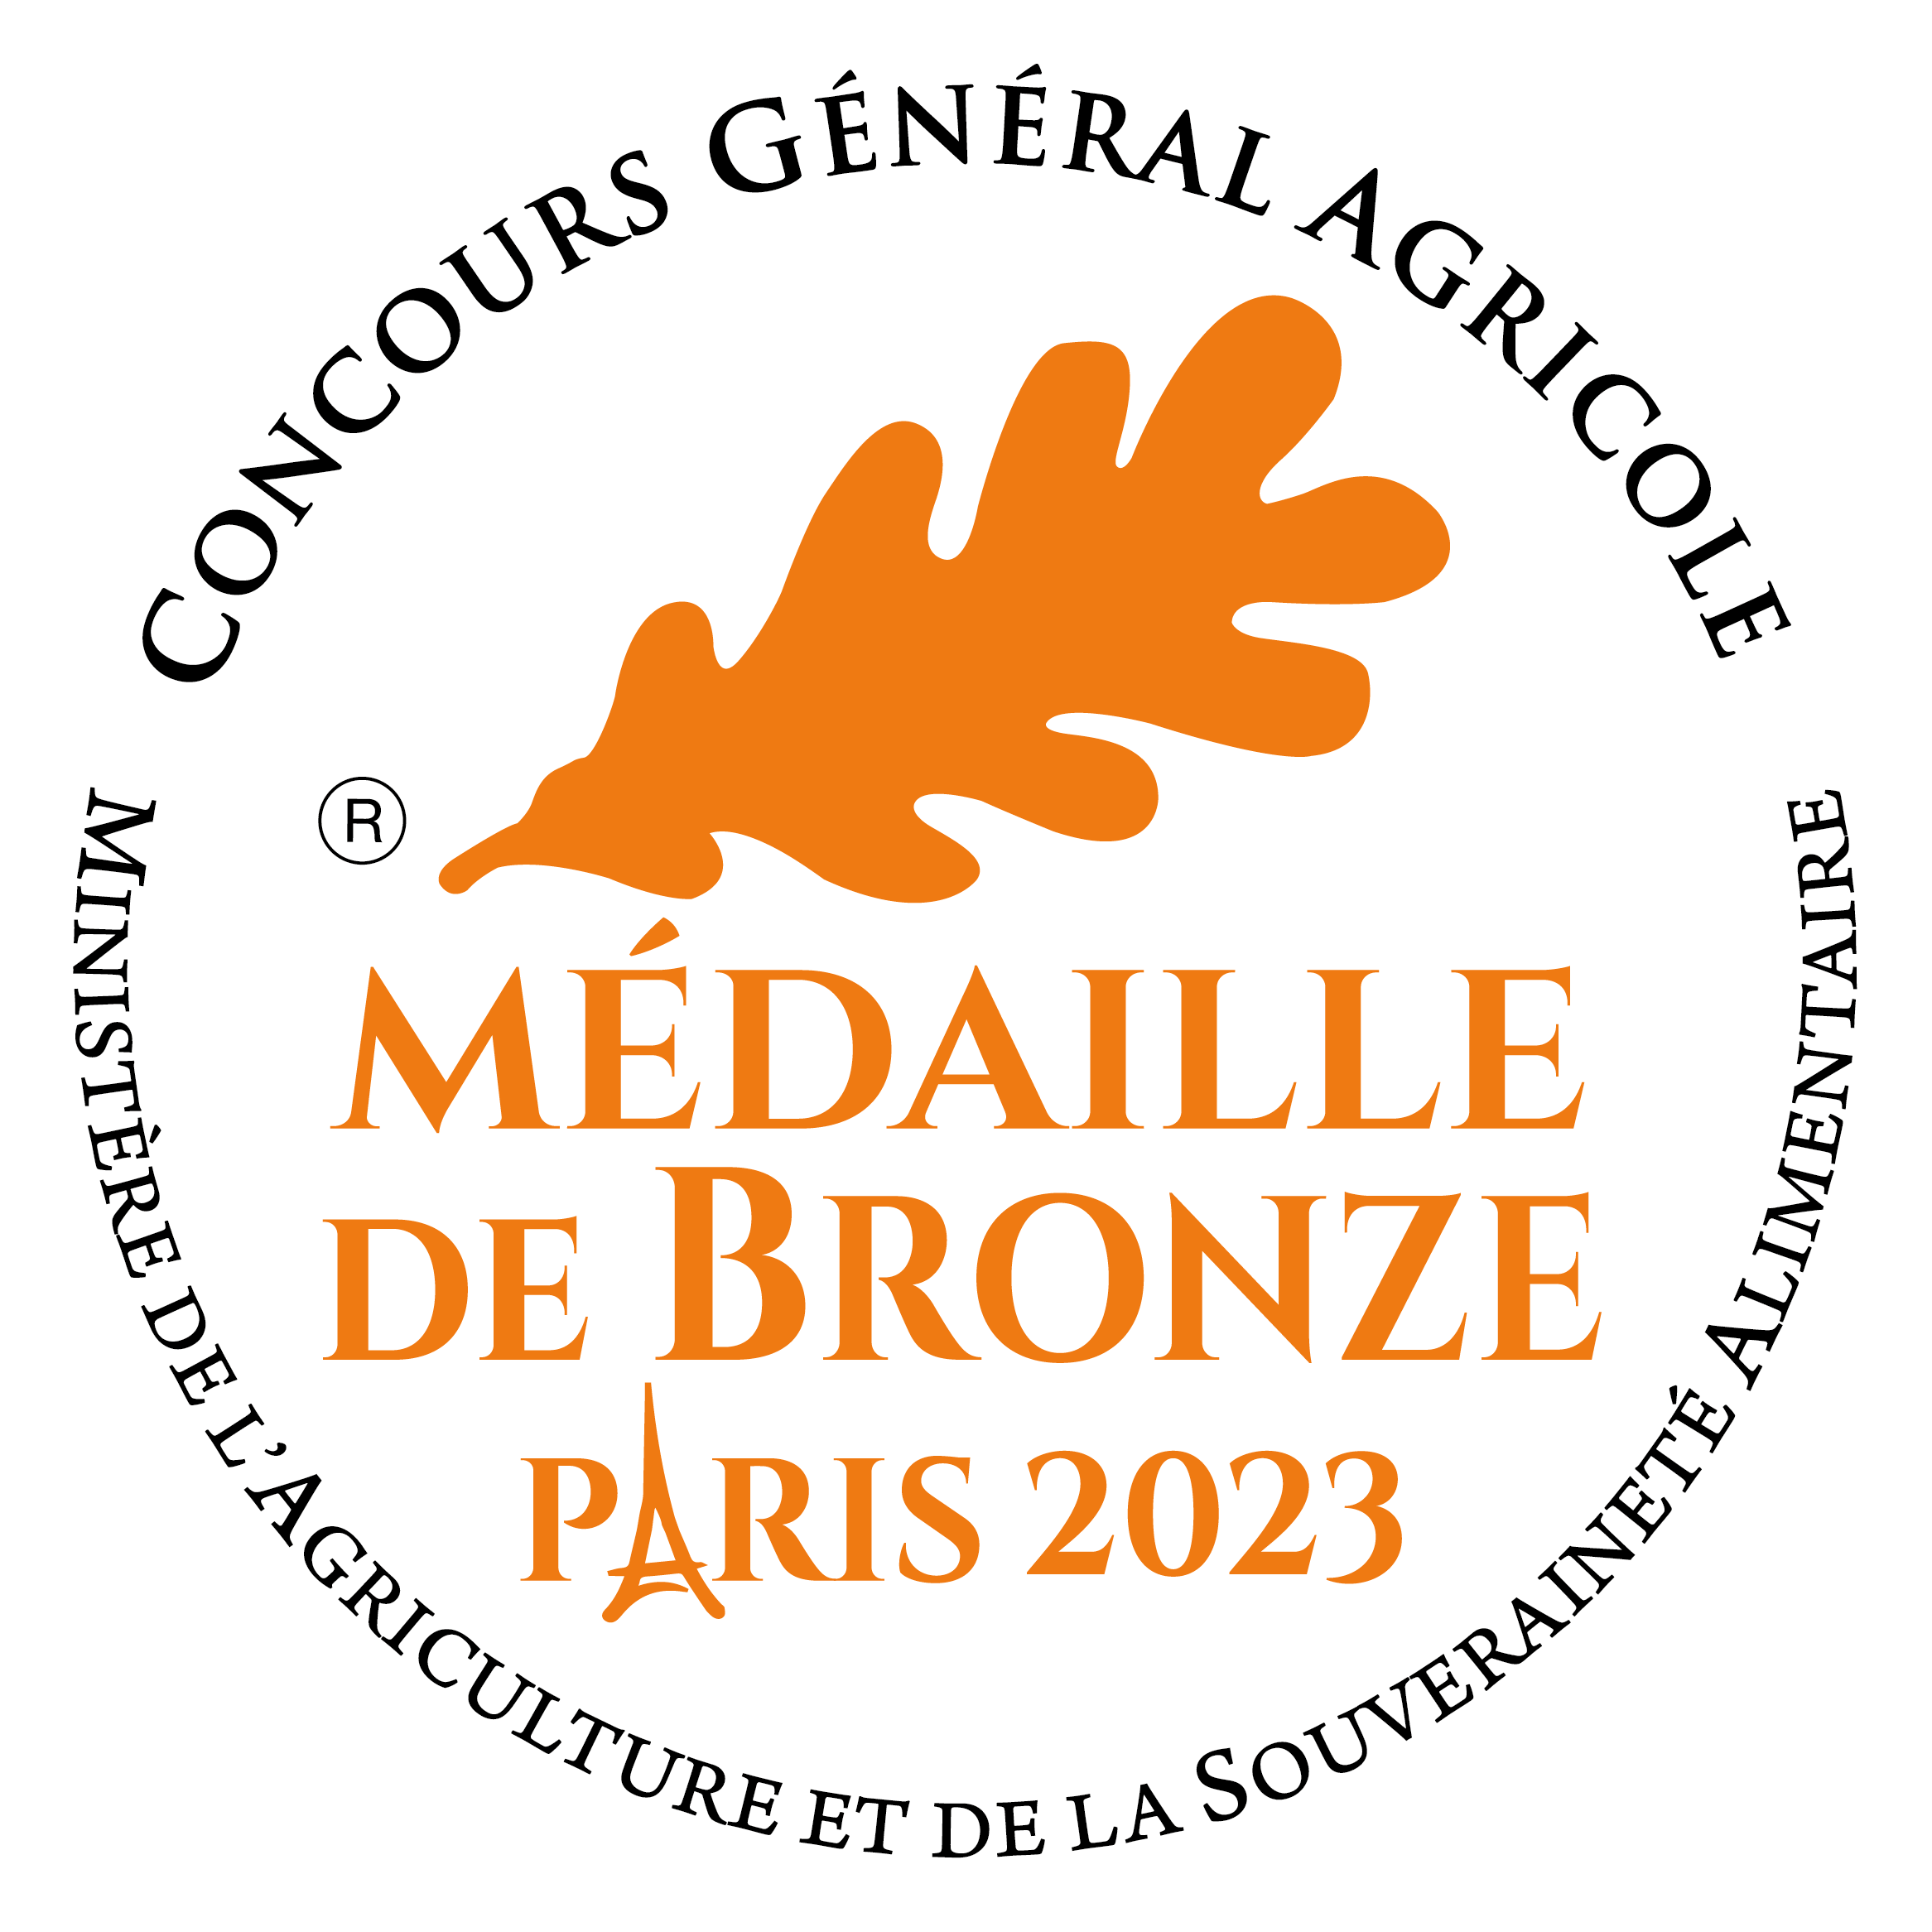 Médaille de bronze concours agricole Paris 2023 - Biscuiterie des Vénètes